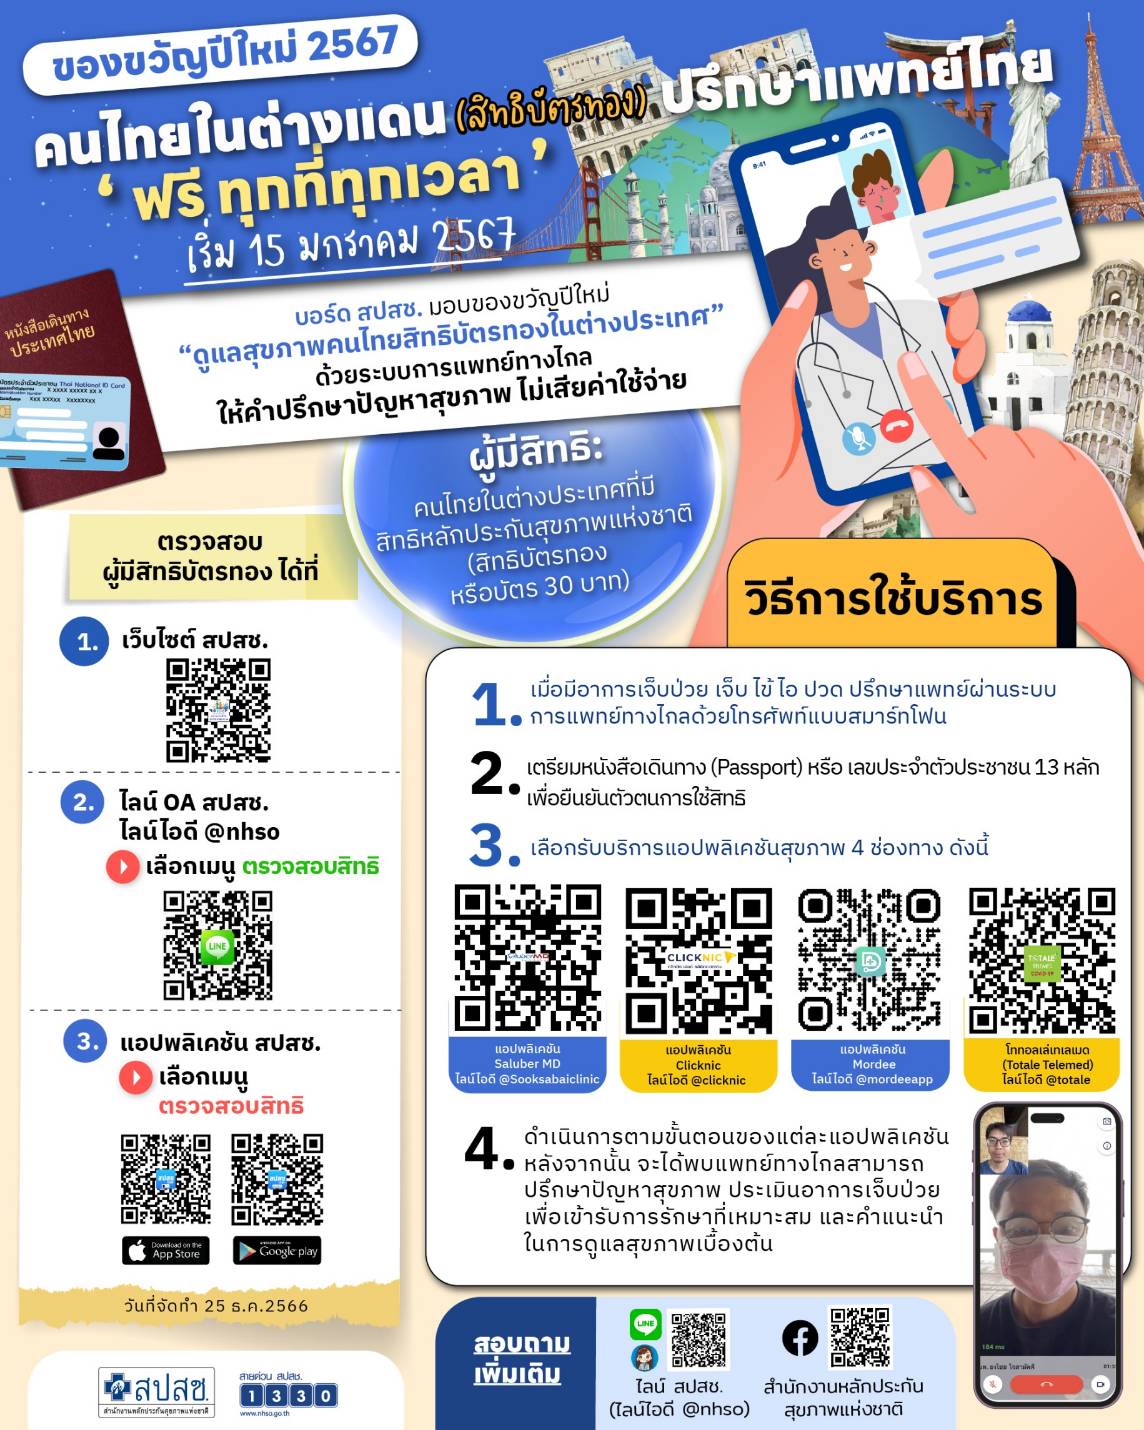 ของขวัญปีใหม่ 2567  คนไทยในต่างแดน สิทธิบัตรทอง ปรึกษาฟรีแพทย์ทางไทย ฟรี ทุกเวลา 